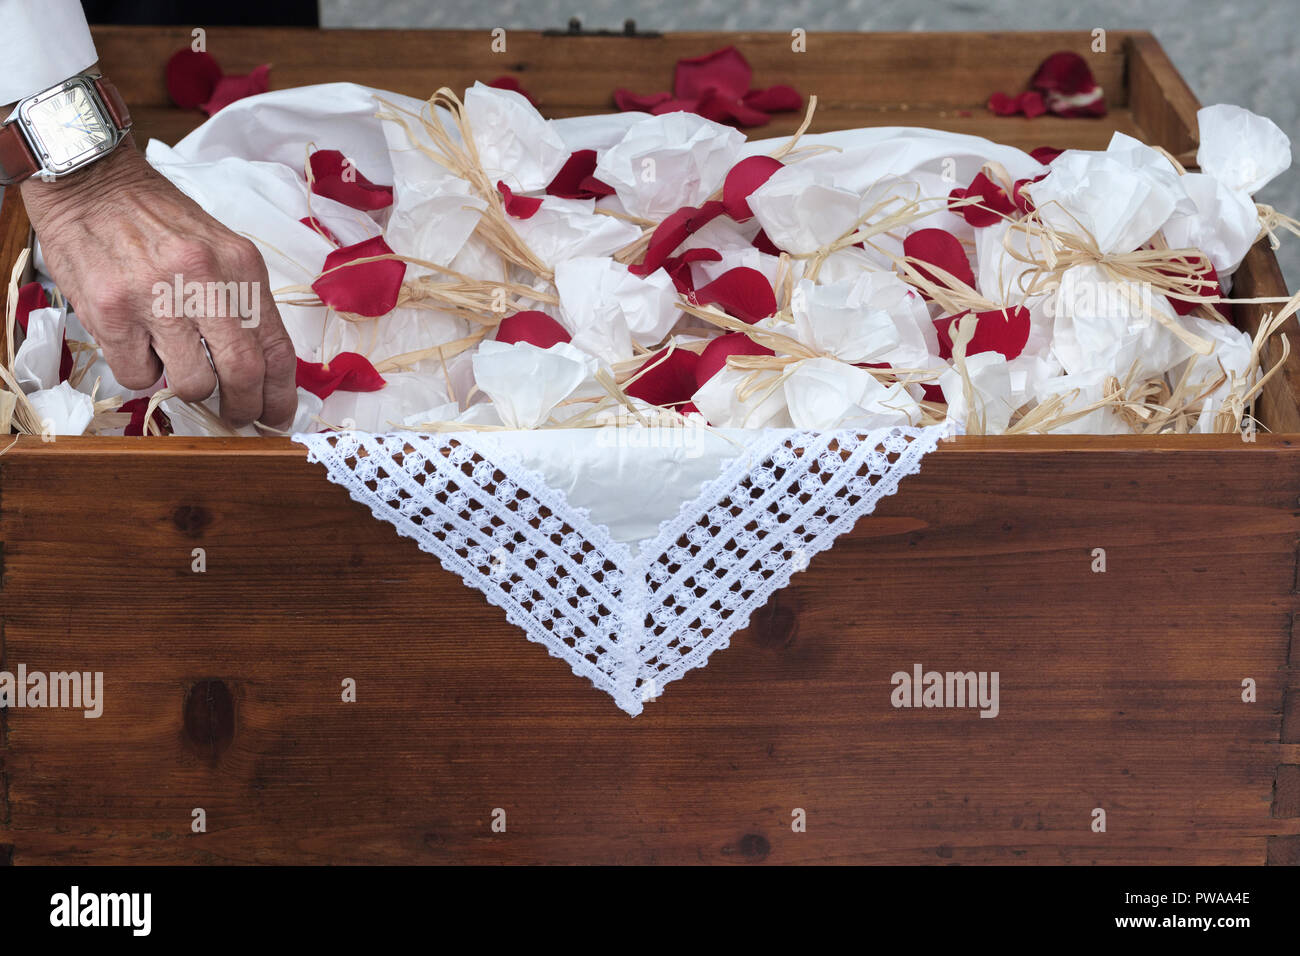 Italienische Hochzeit, Pakete von Reis für Gäste über glückliche Paar zu  werfen, der Piazza del Duomo, der Domplatz, Pistoia, Toskana, Italien,  Europa Stockfotografie - Alamy